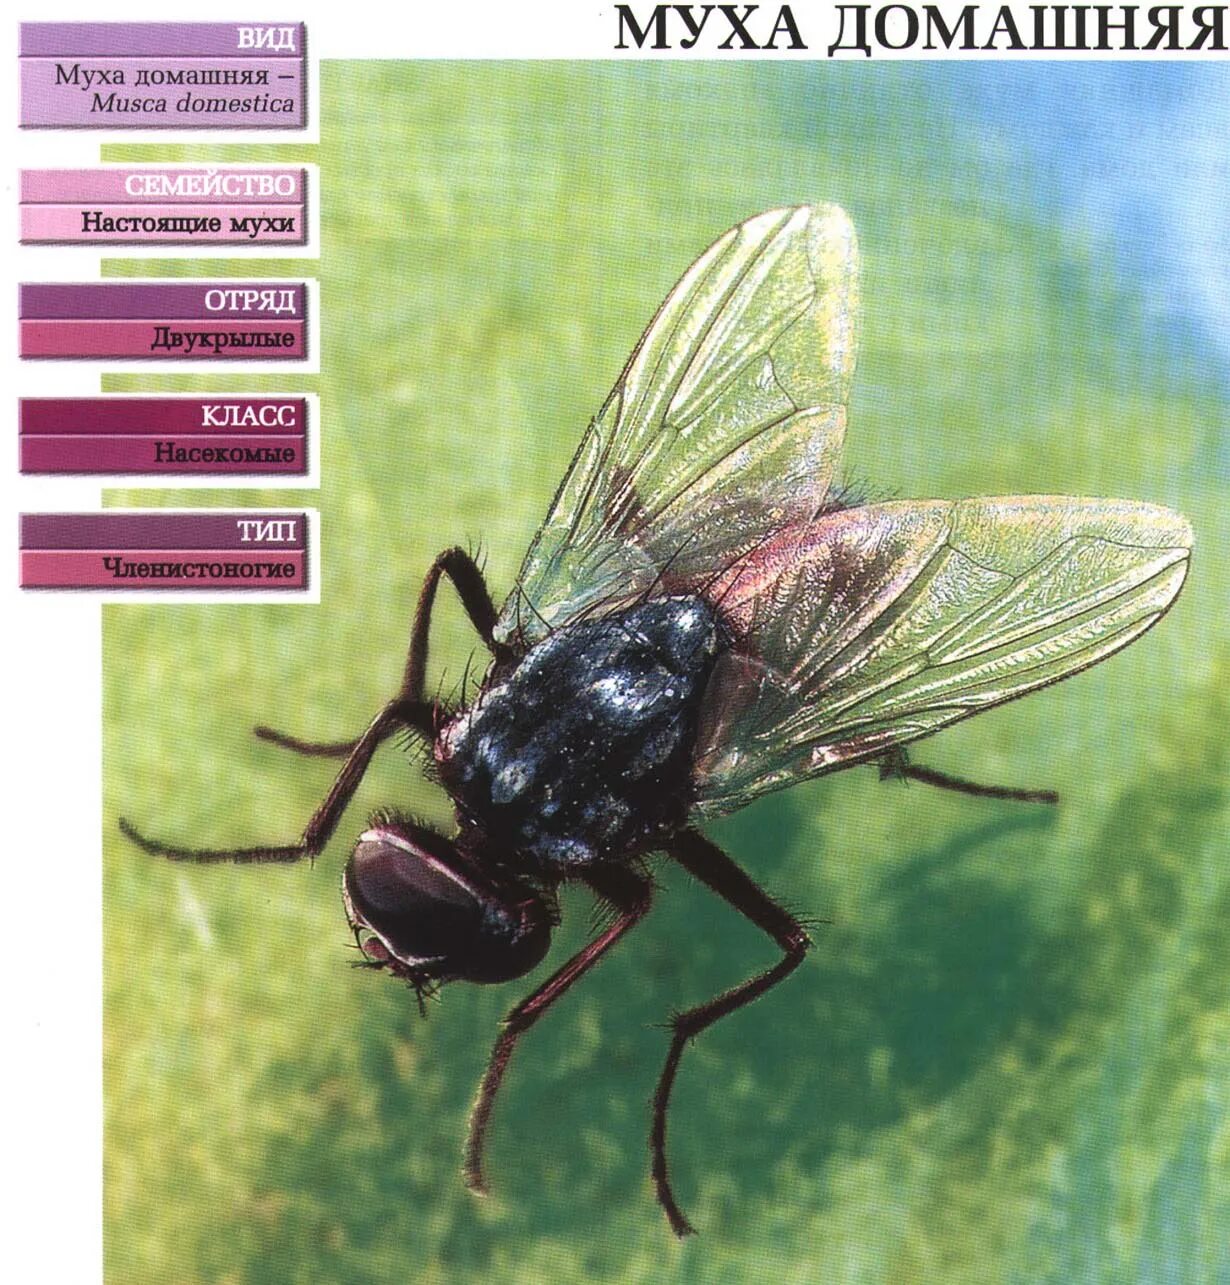 Видовое название мухи. Классификация мухи. Комнатная Муха. Виды комнатных мух. Муха домашняя.